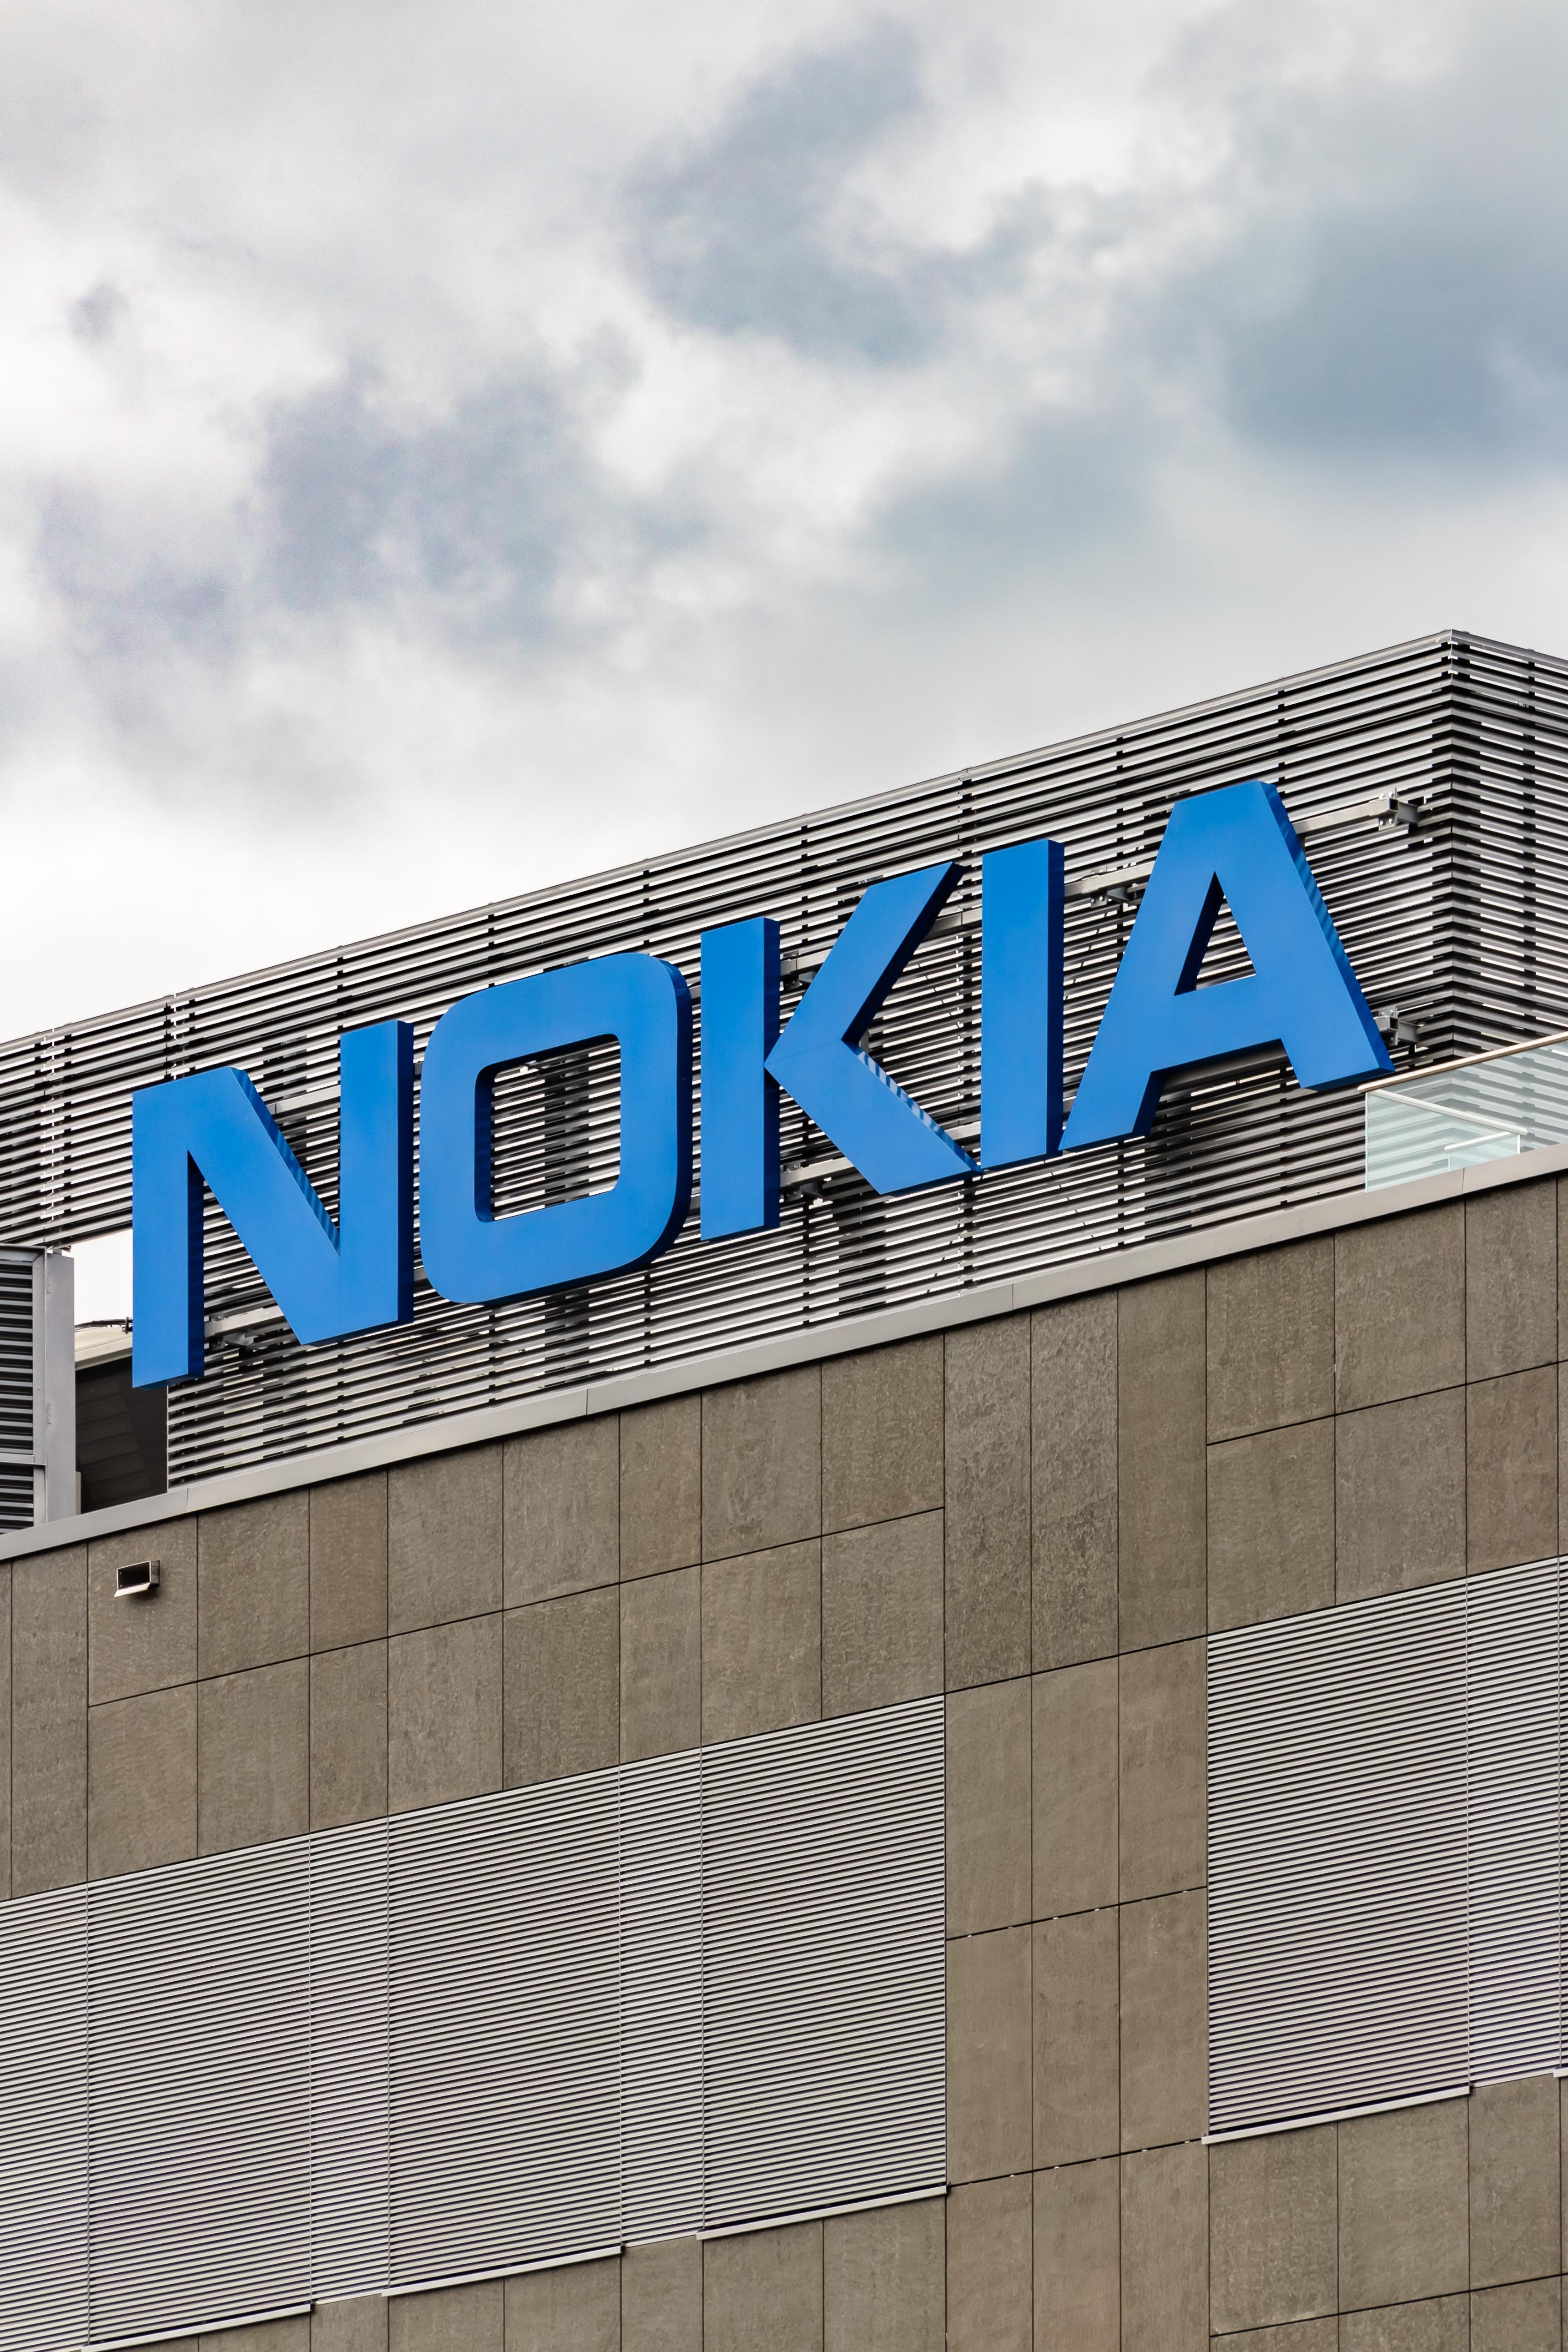 El Govern rus podria estar utilitzant equipament de Nokia en el seu sistema d'espionatge